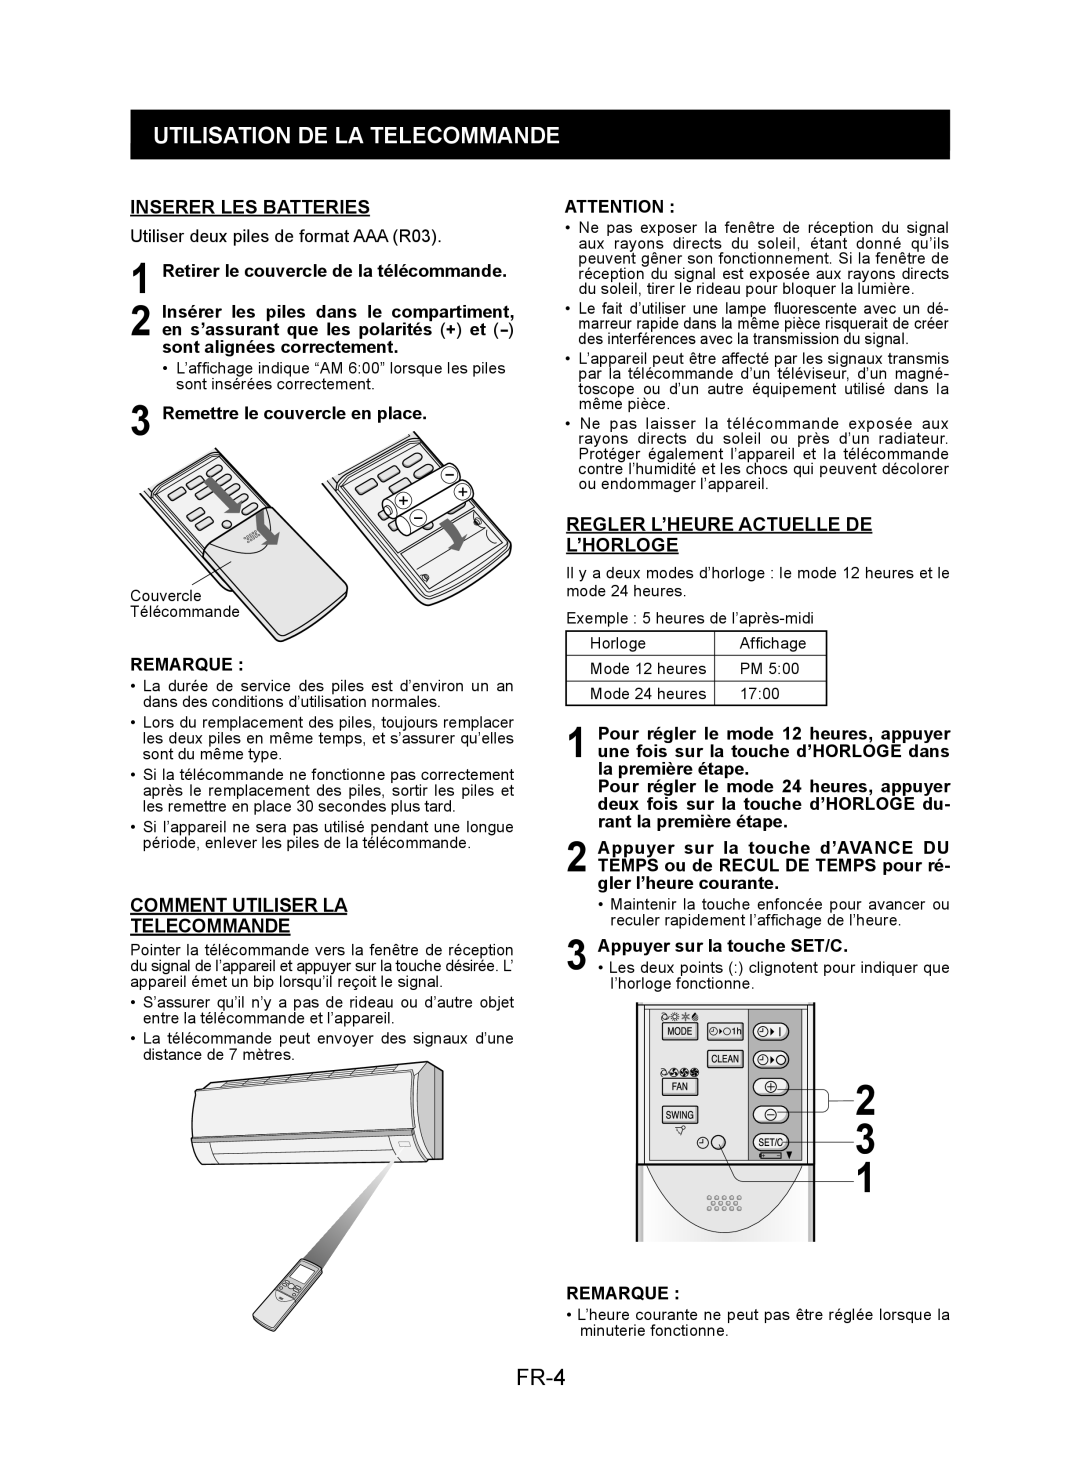 Sharp AY-XPC7JR Utilisation De La Telecommande, FR-4, Inserer Les Batteries, Comment Utiliser La Telecommande, Remarque 